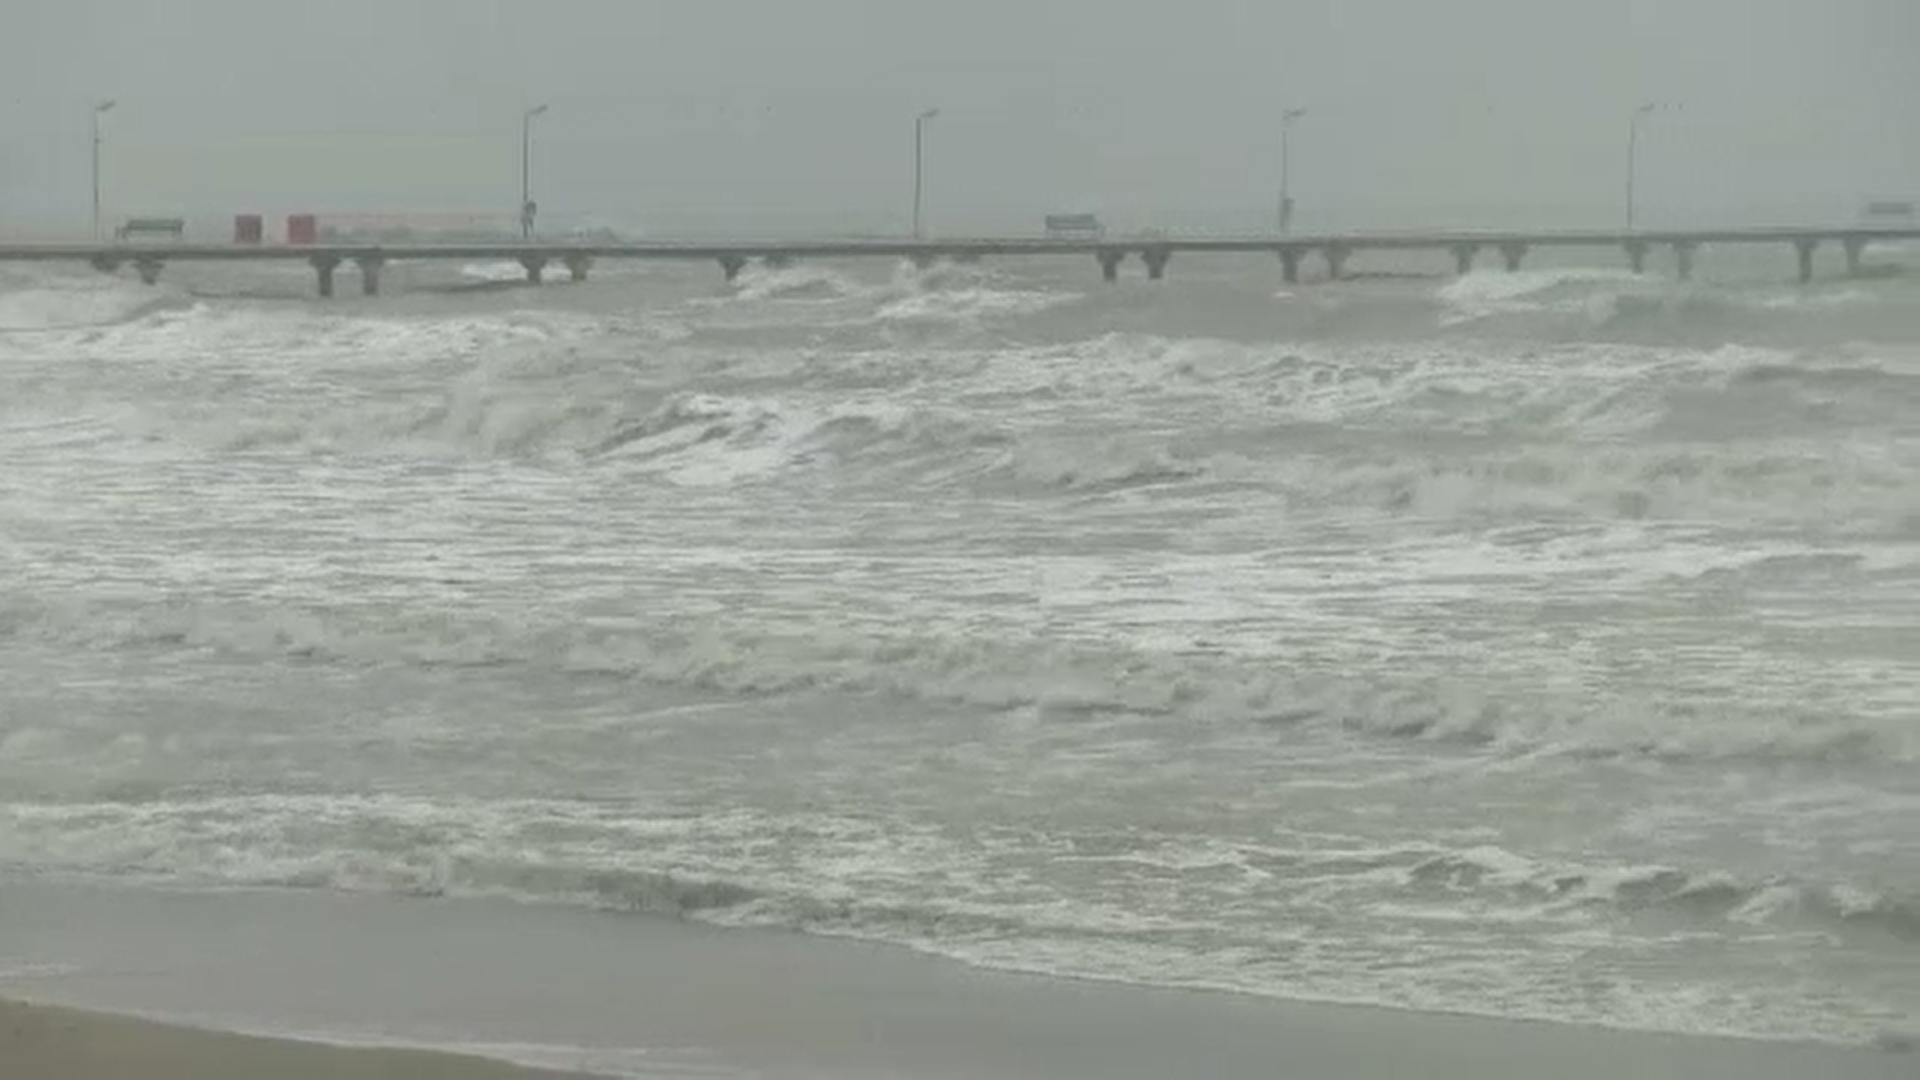 Furtună puternică la malul mării. Autorităţile au decis să suspende manevrele în Portul Constanța